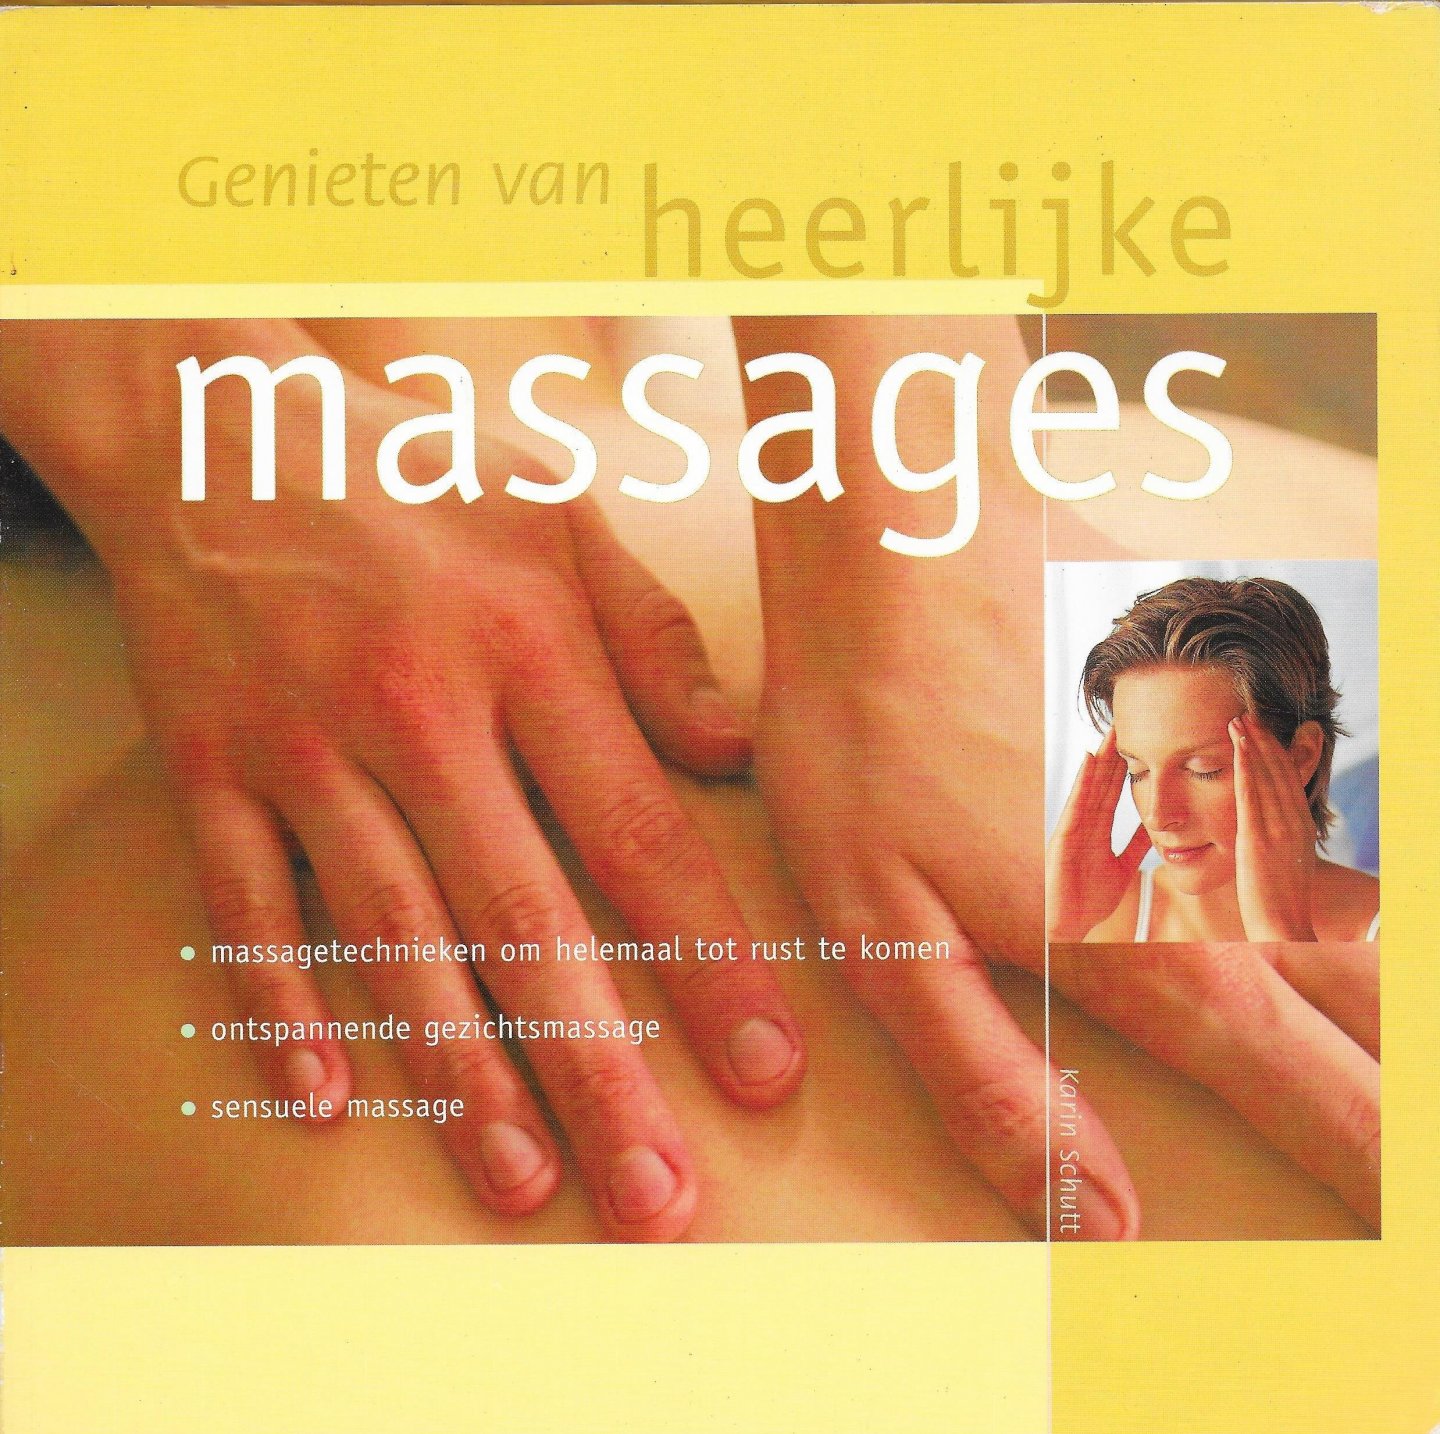 SCHUTT, KARIN - Genieten van heerlijke massages. –massagetechnieken om helemaal tot rust te komen – ontspannende gezichtsmassage – sensuele massage.